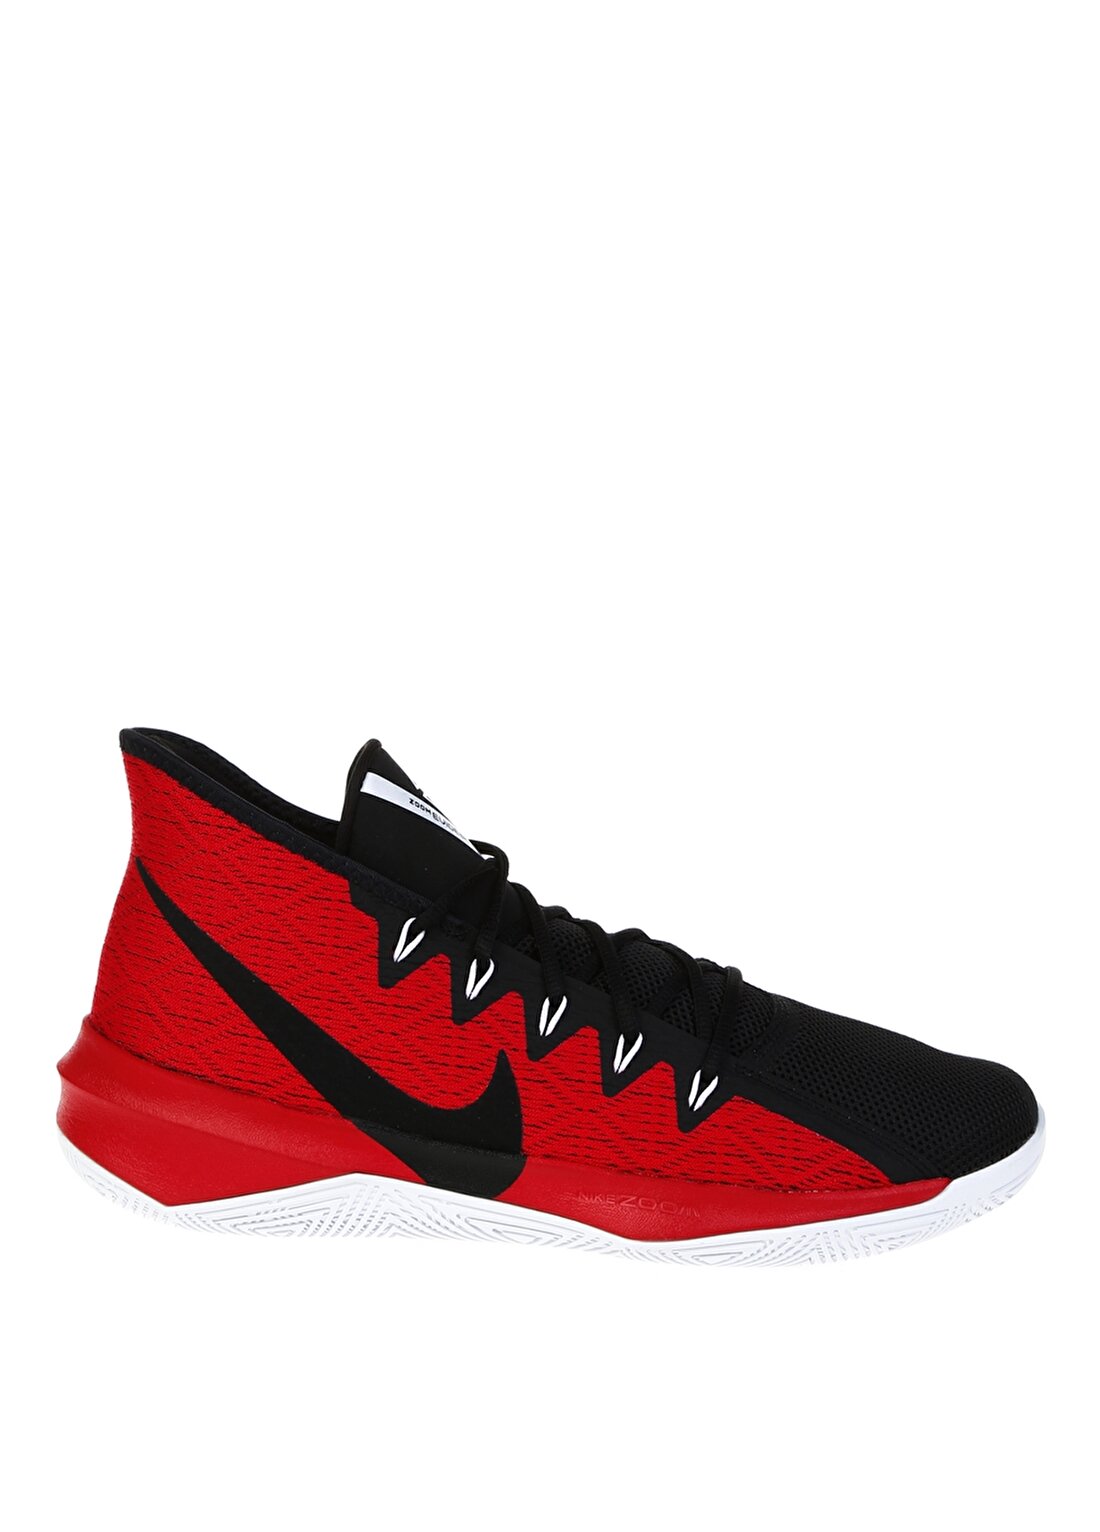 Nike Zoom Evidence III Basketbol Ayakkabısı